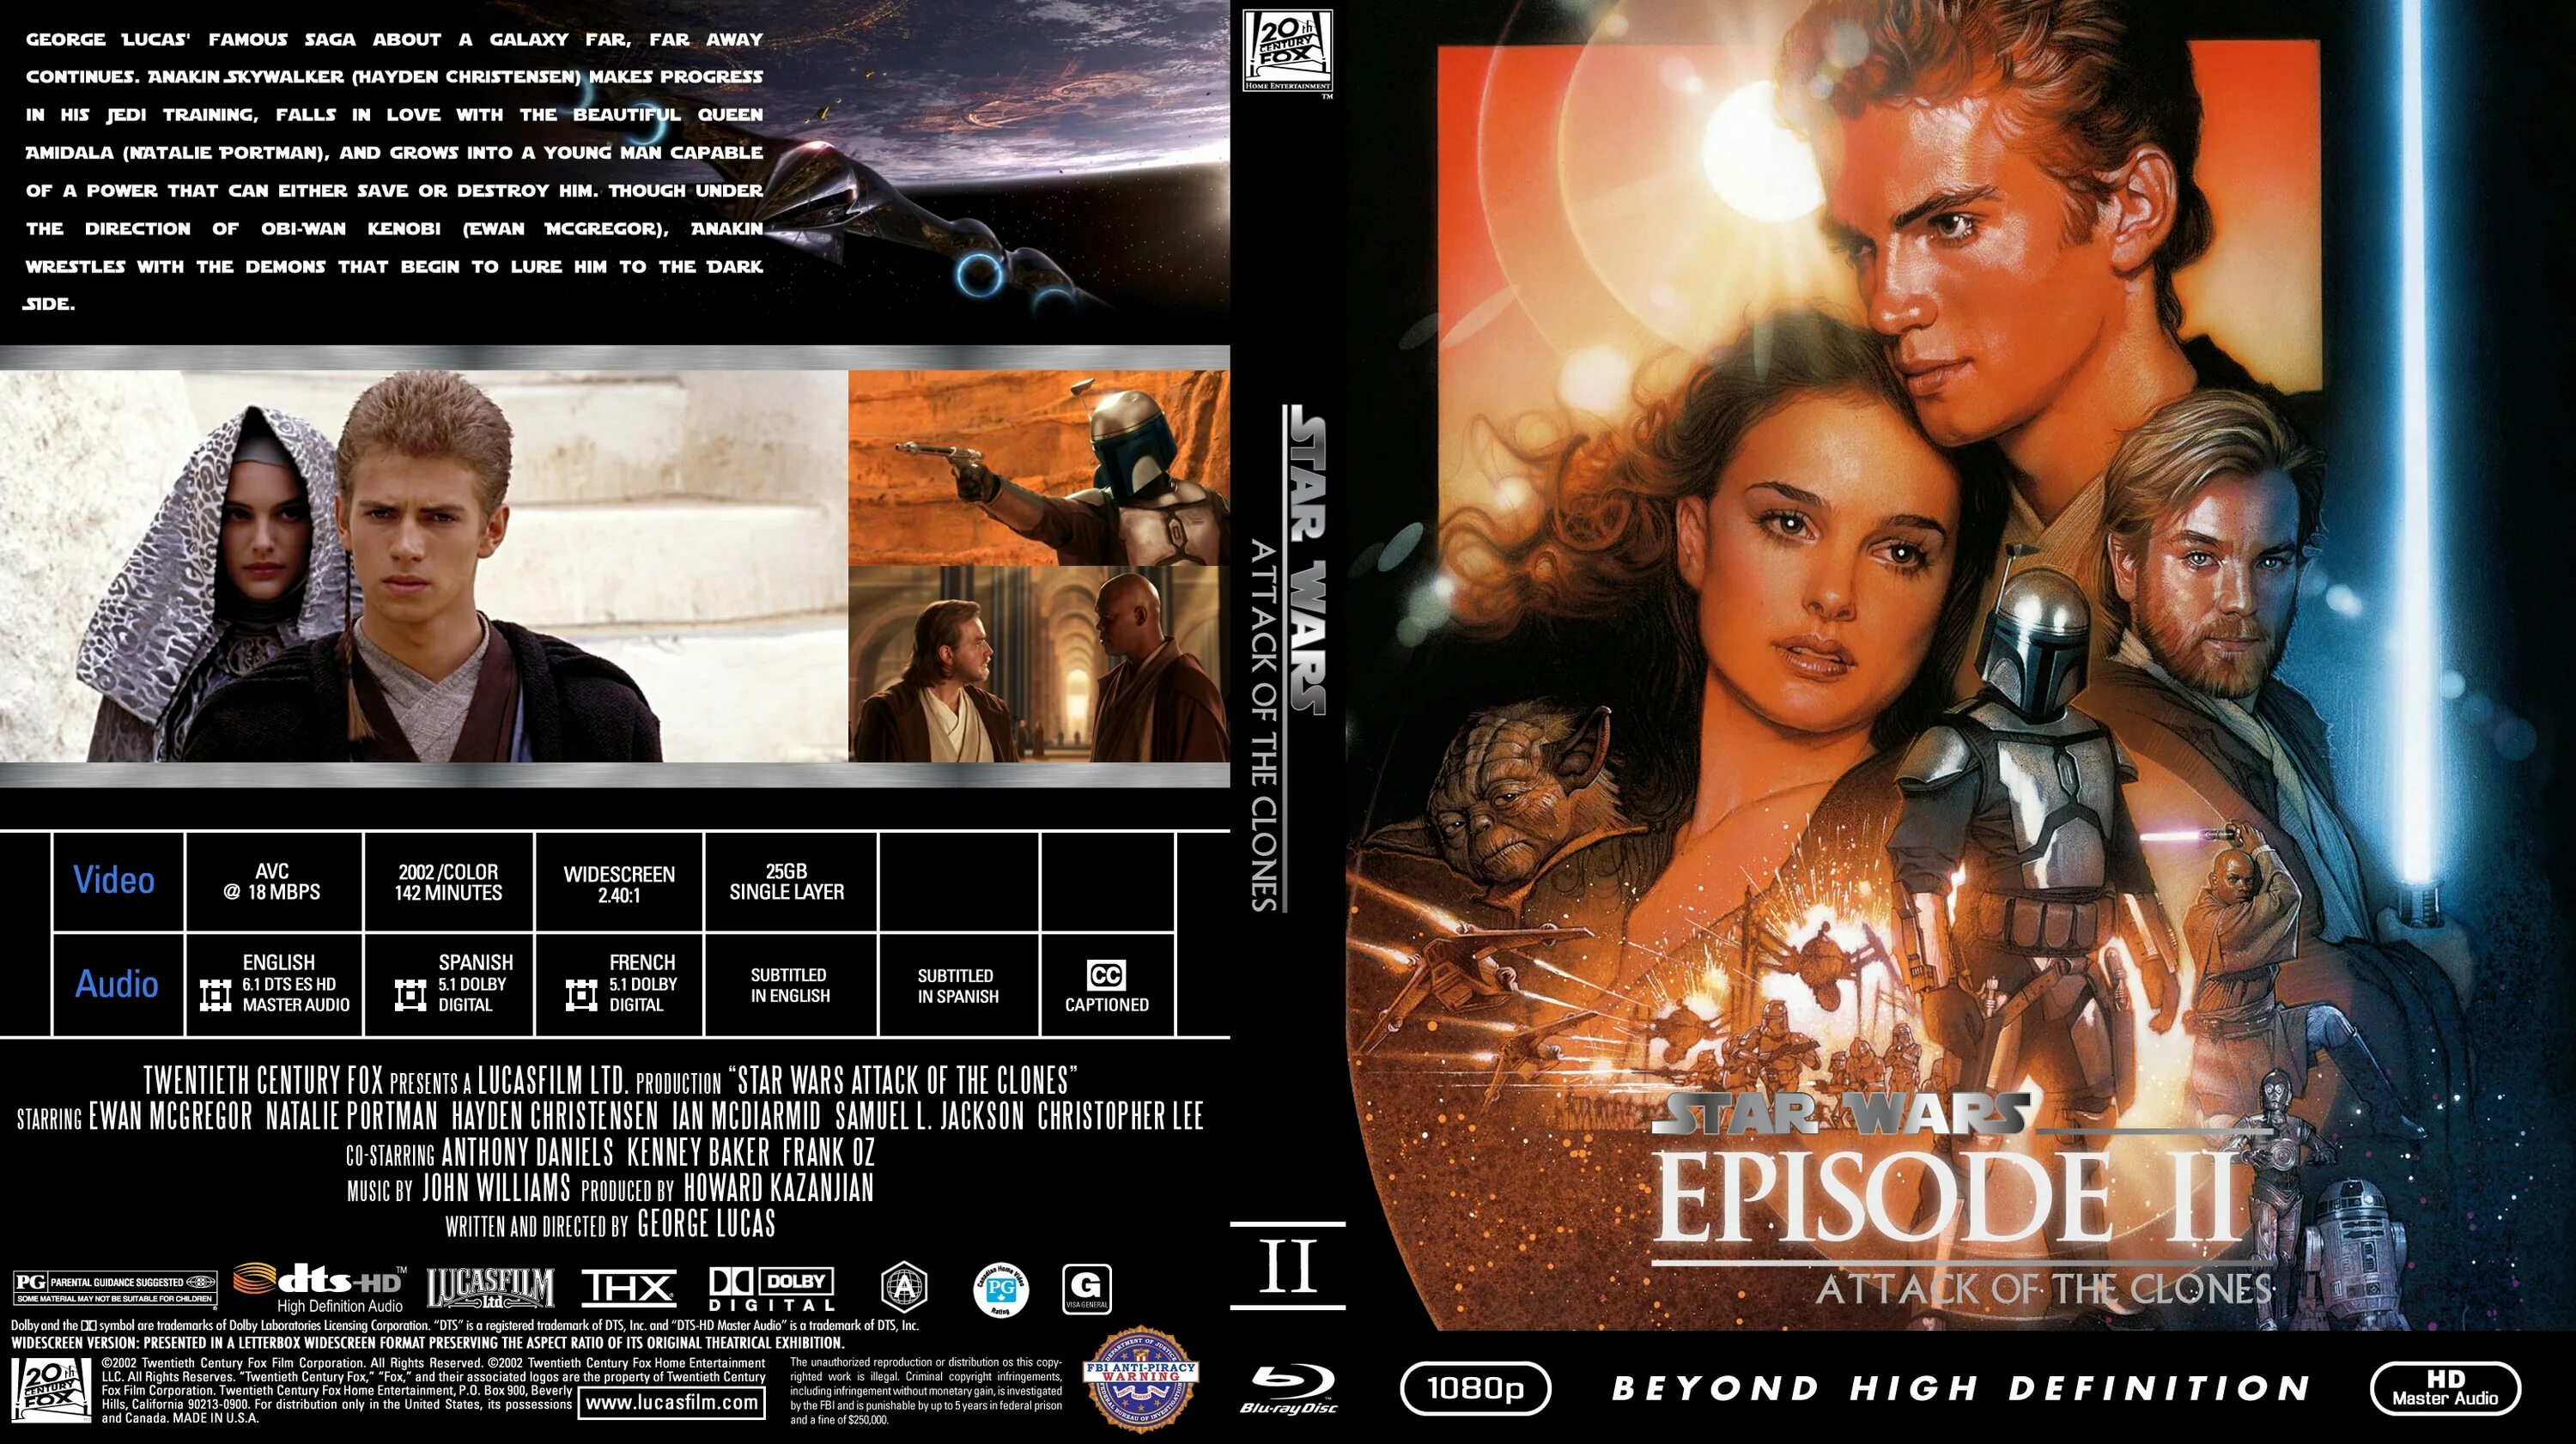 Магическая битва 2 блю рей. Звёздные войны: эпизод 2 Blu-ray. Звездные войны 2 атака клонов Star Wars Episode II - Attack of the Clones (2002). Звездные войны 1 эпизод обложка диска Blue ray.